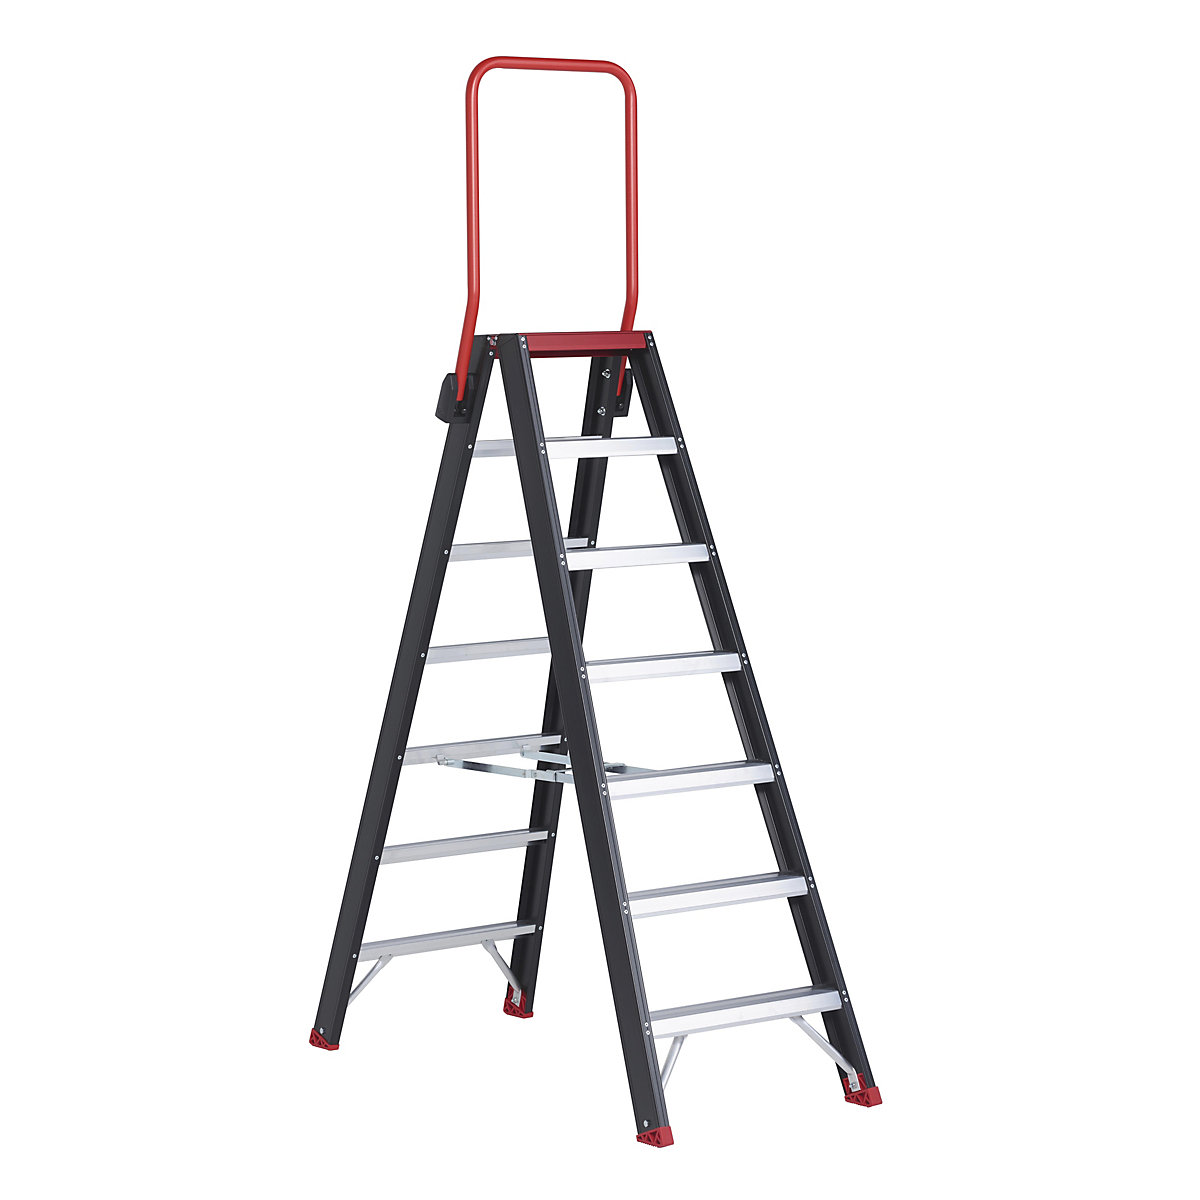 Escada dupla de segurança – Altrex, subida dos dois lados, 2 x 7 degraus-8